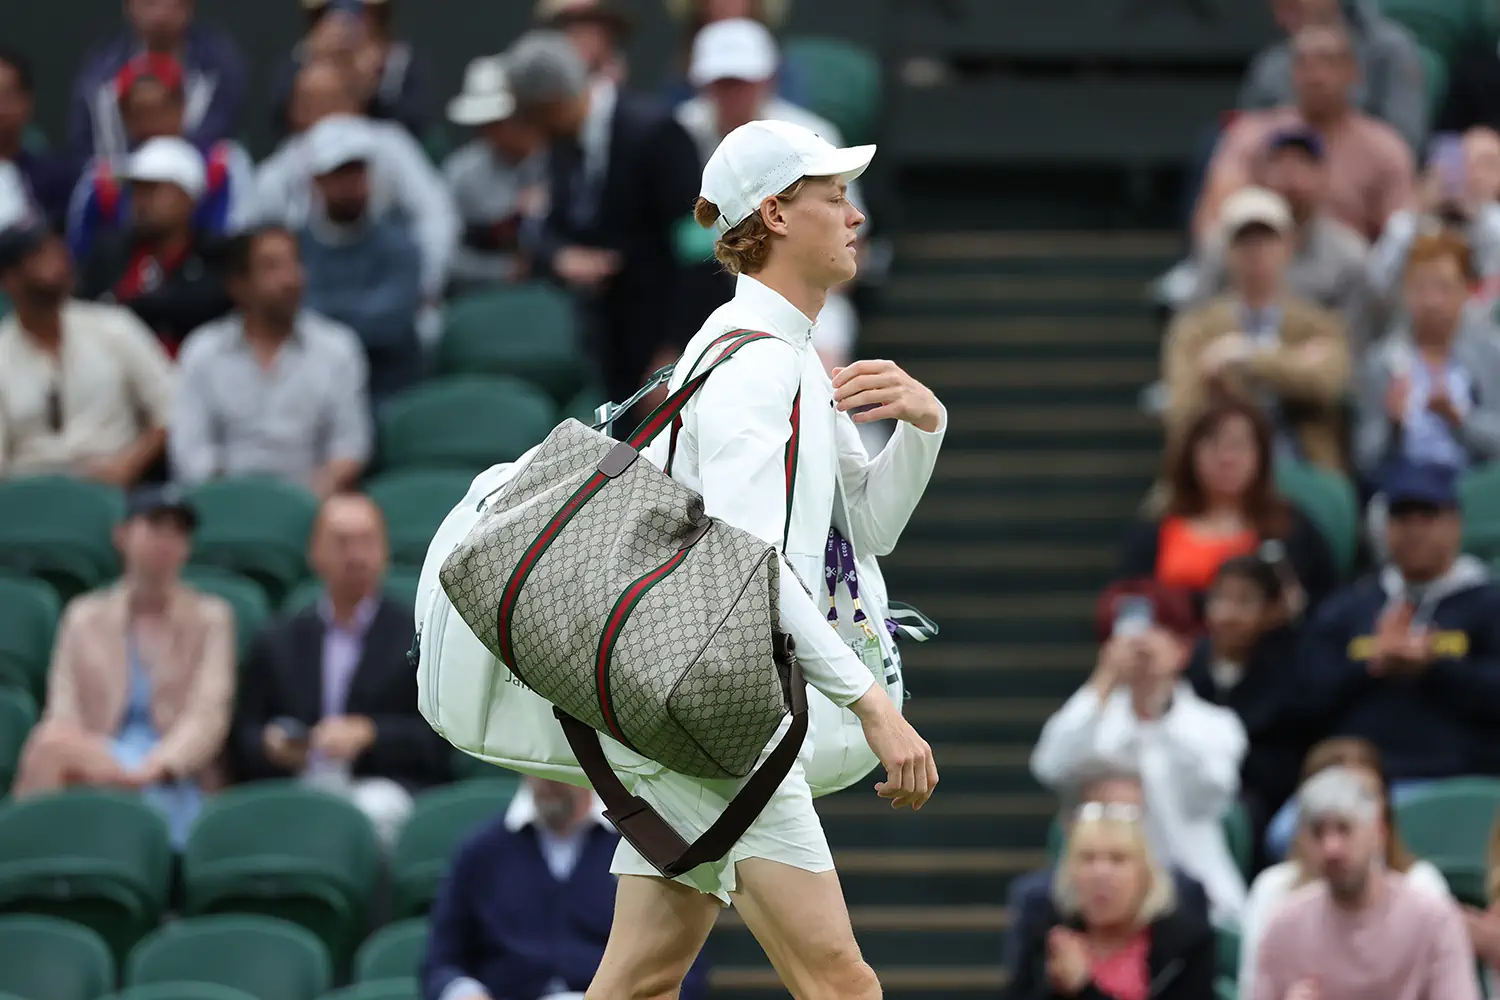 Serving style at Wimbledon: Jannik Sinner's Gucci game-set-match